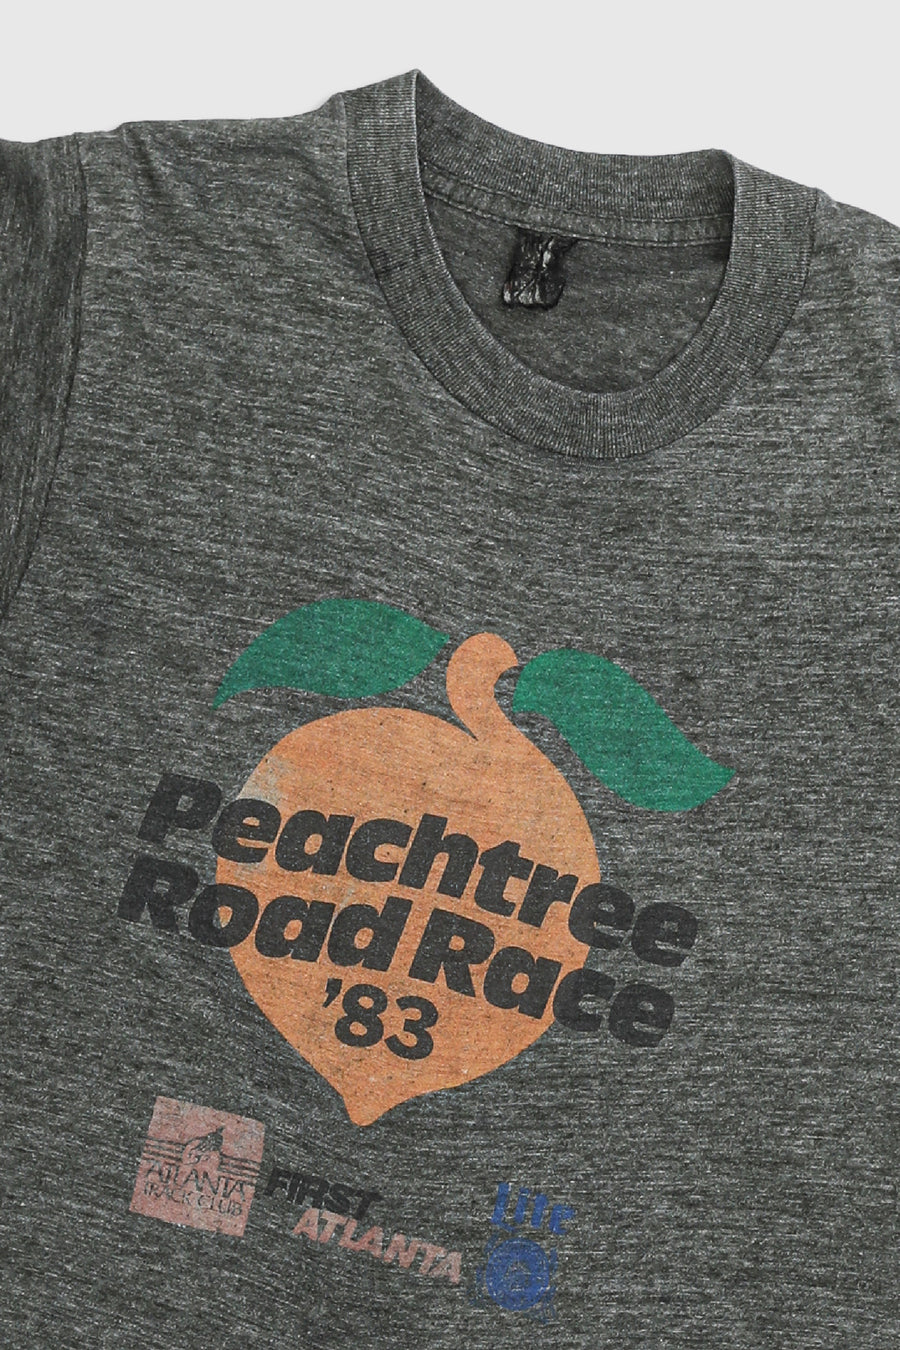 Vintage PeachTree Road Race Tee